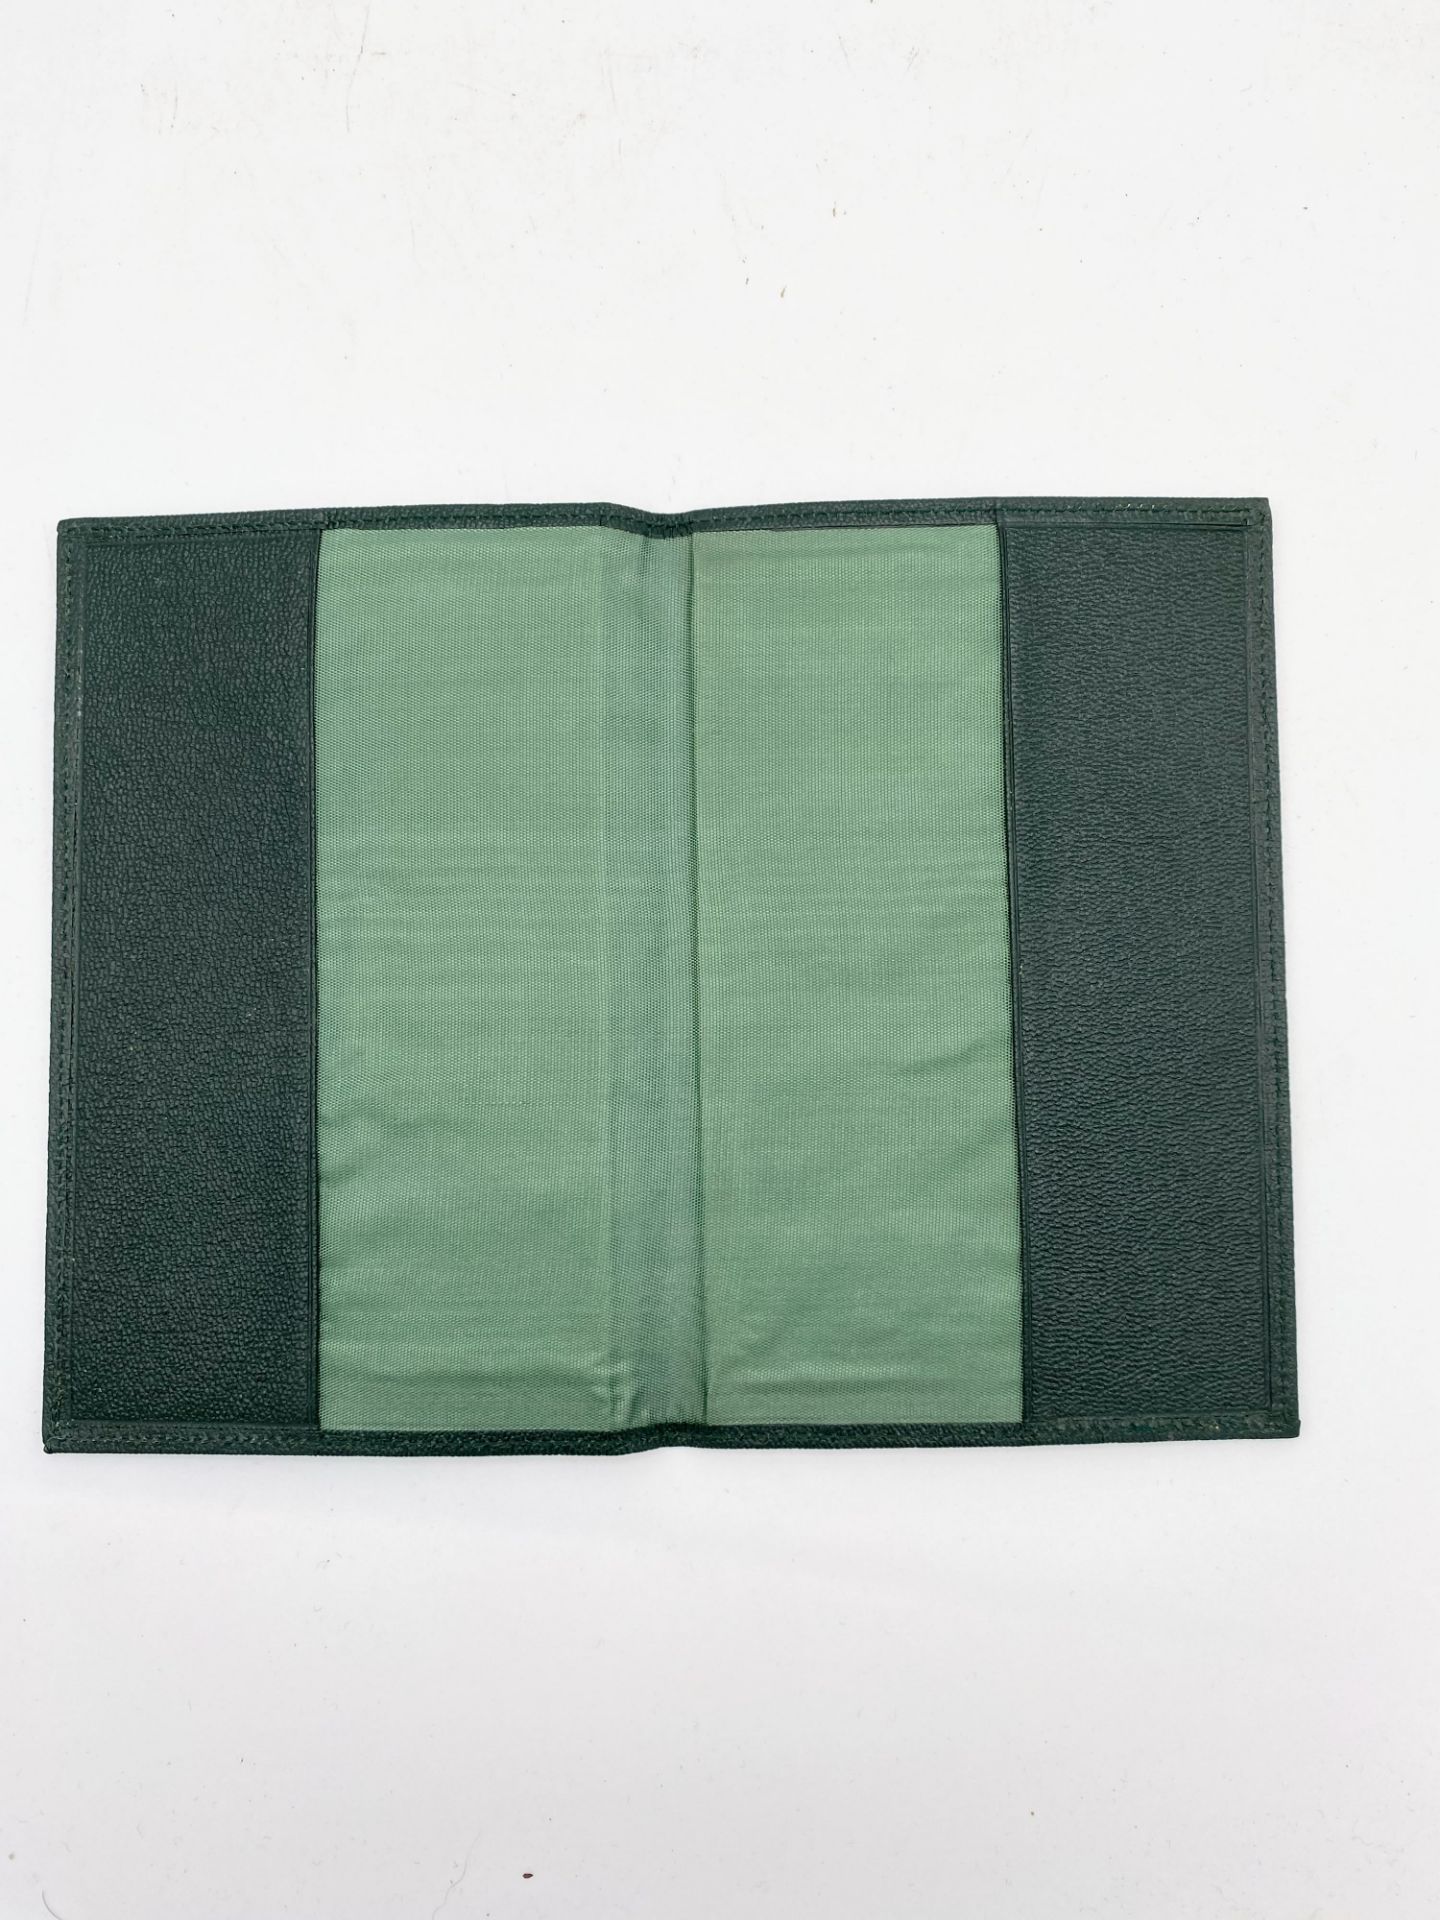 ROLEX Maroquinerie - Pochette en maroquin vert émeraude - insigne en haut à droite - ca 1960 - Image 3 of 3